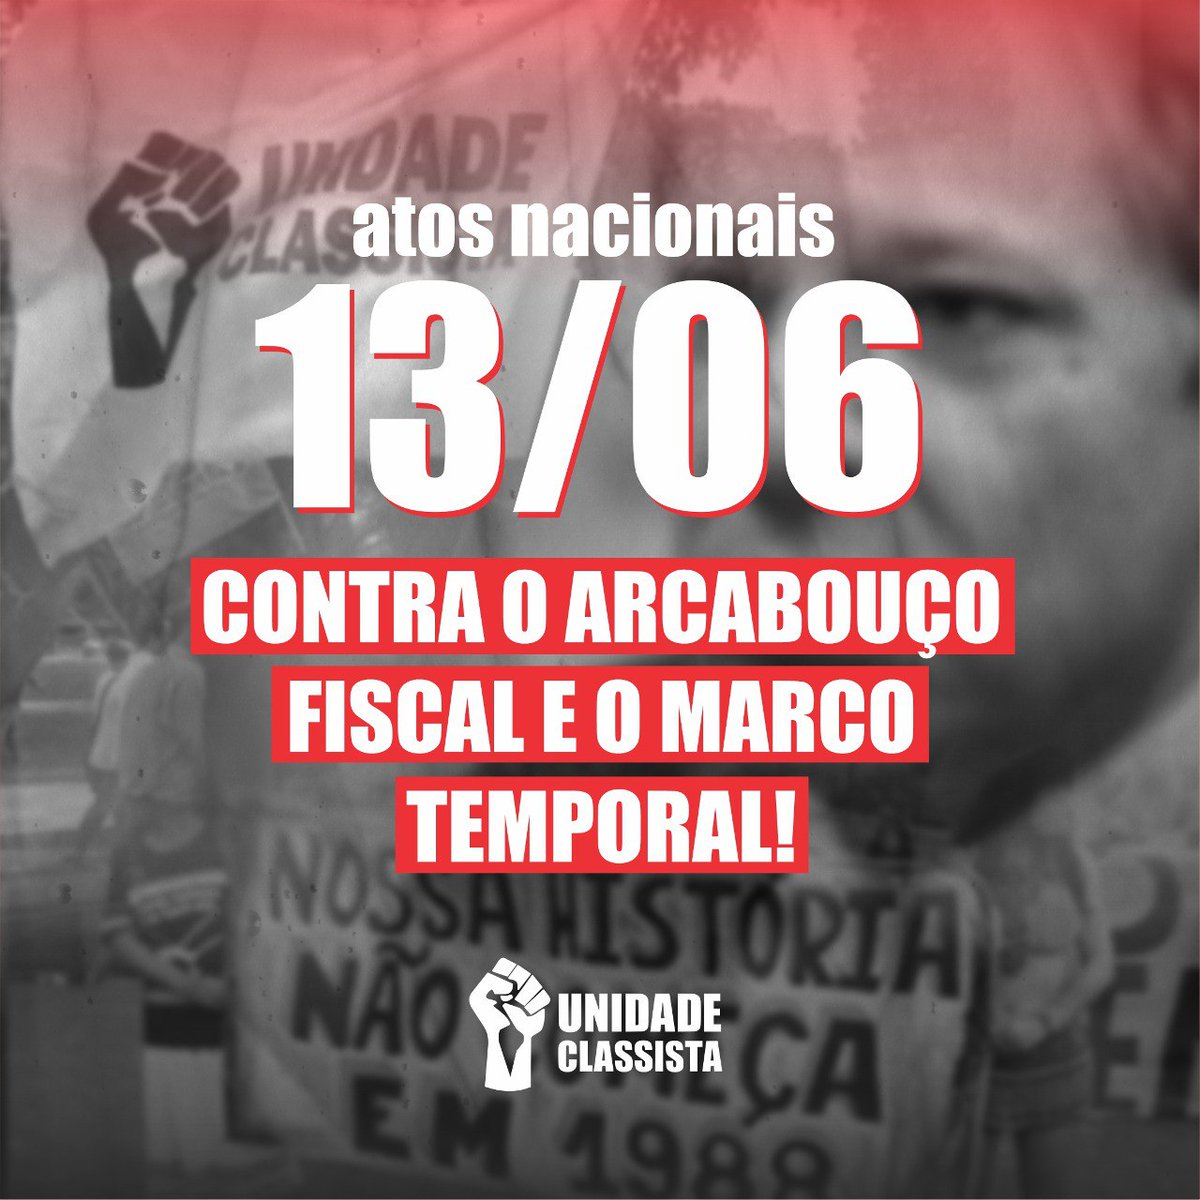 unidadeclassista.org.br/geral/retomar-…

#ArcabouçoFiscalNão #NãoAoArcabouçoFiscal 
#NãoAoMarcoTemporal